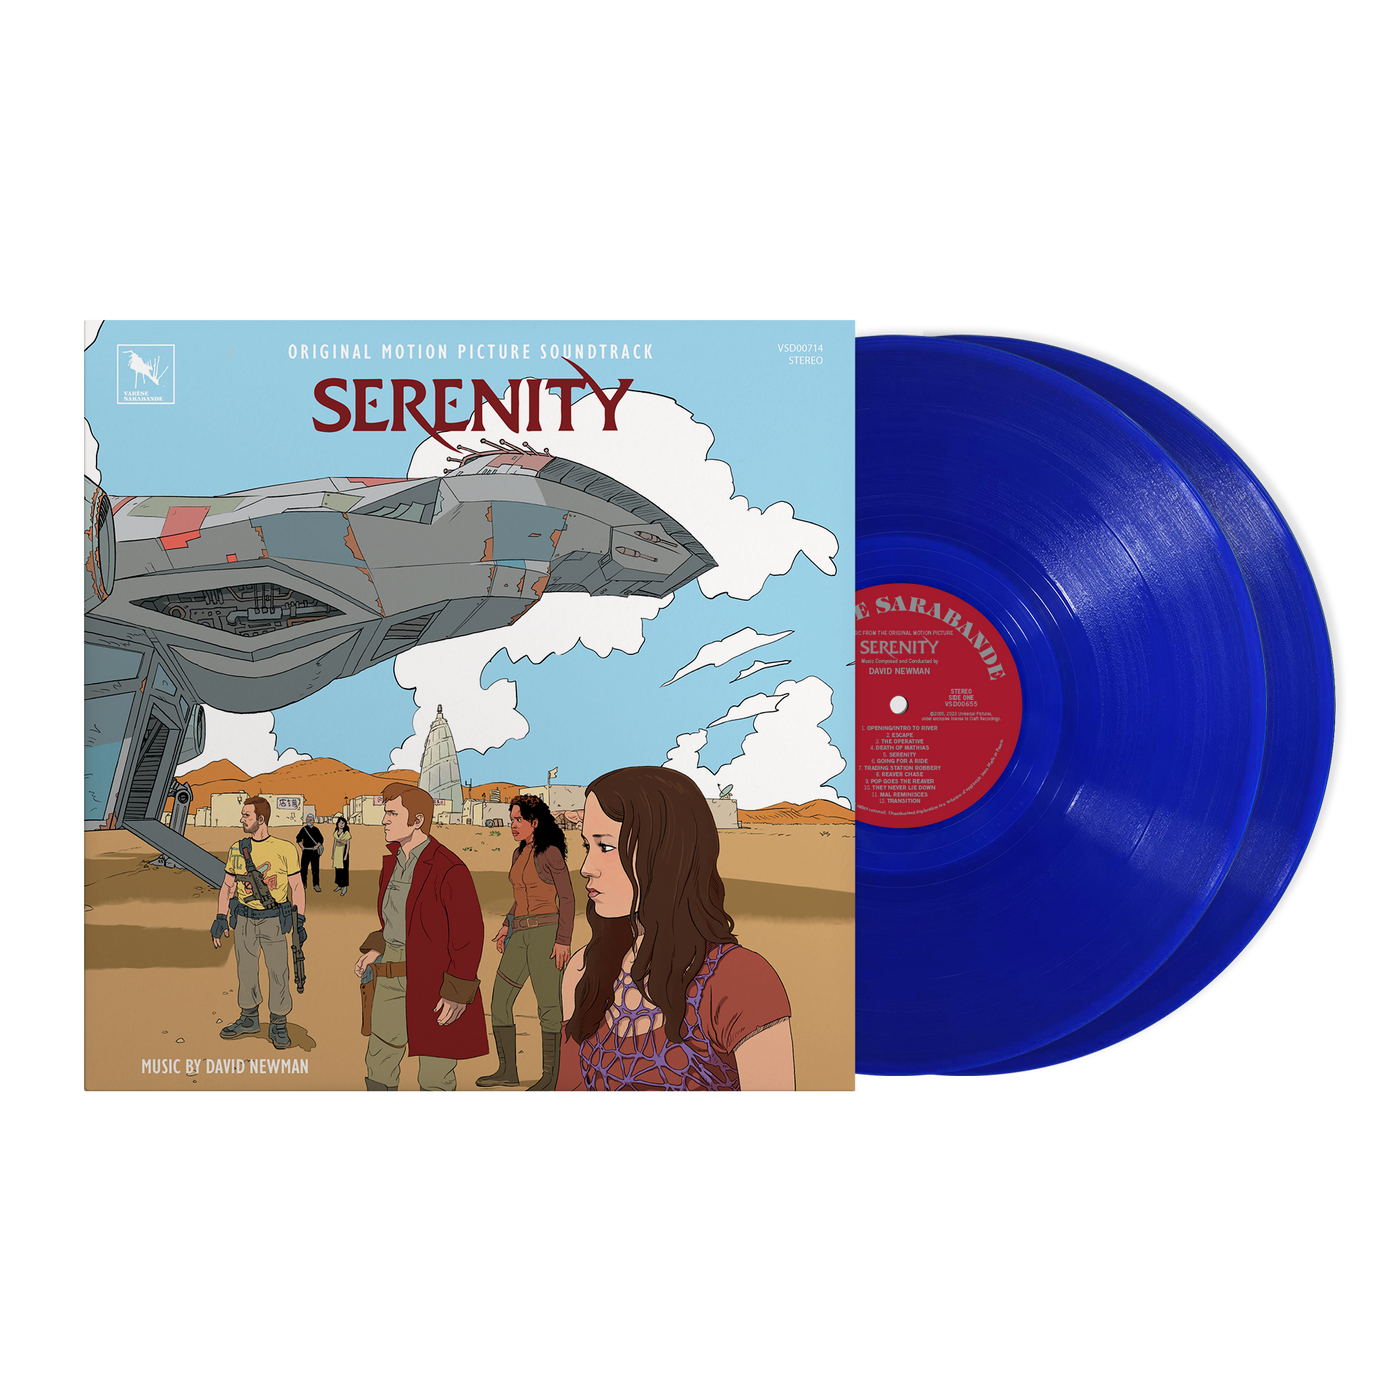 David Newman – David Newman – Serenity (Deluxe Edition Soundtrack 